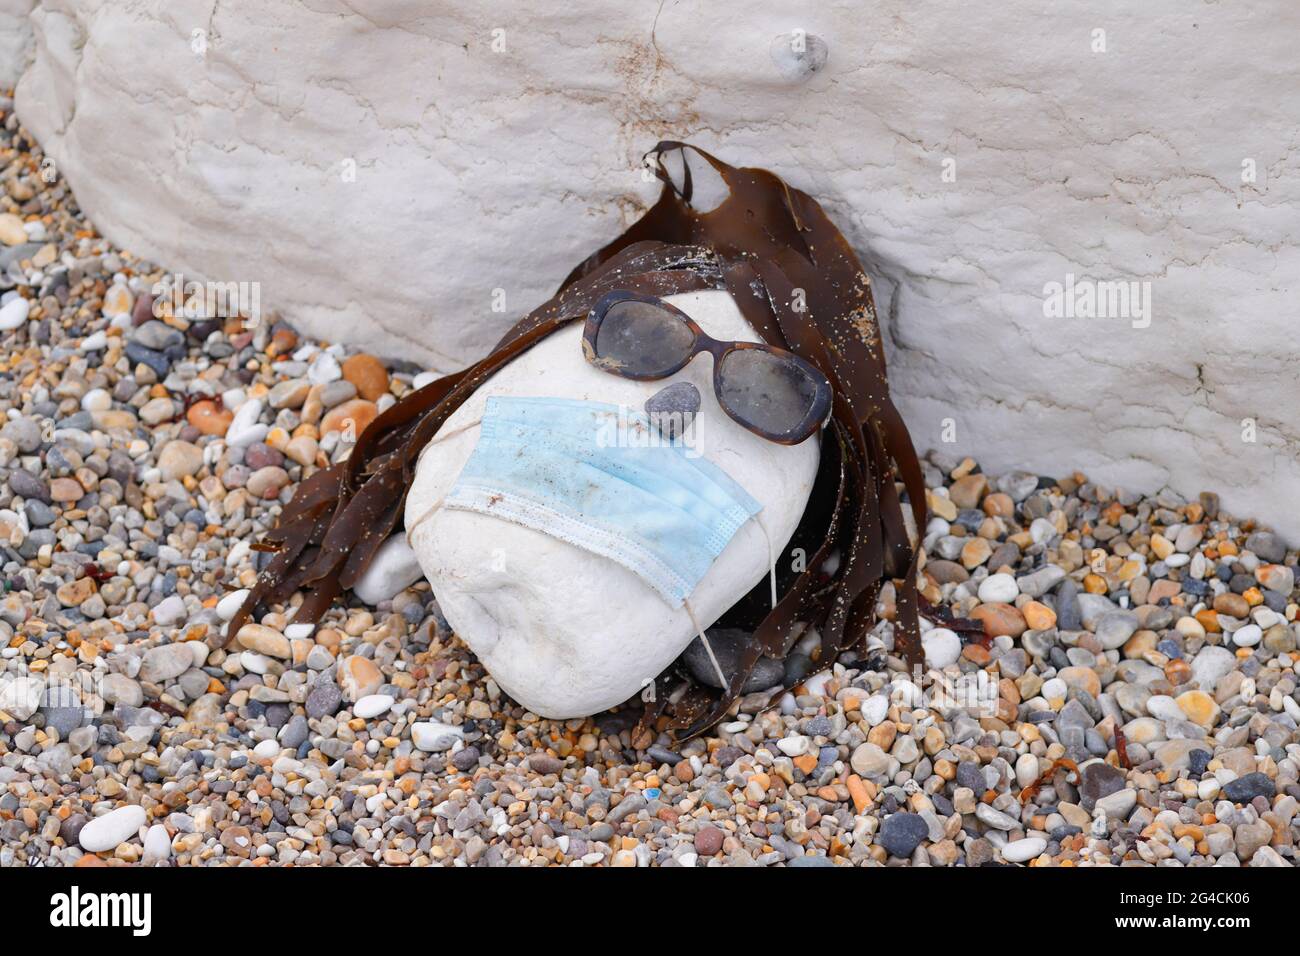 Un visage fait d'un galet, de lunettes de soleil, d'algues et d'un masque Covid, trouvé sur une plage à Thornwick Bay, East Yorkshire, Royaume-Uni Banque D'Images